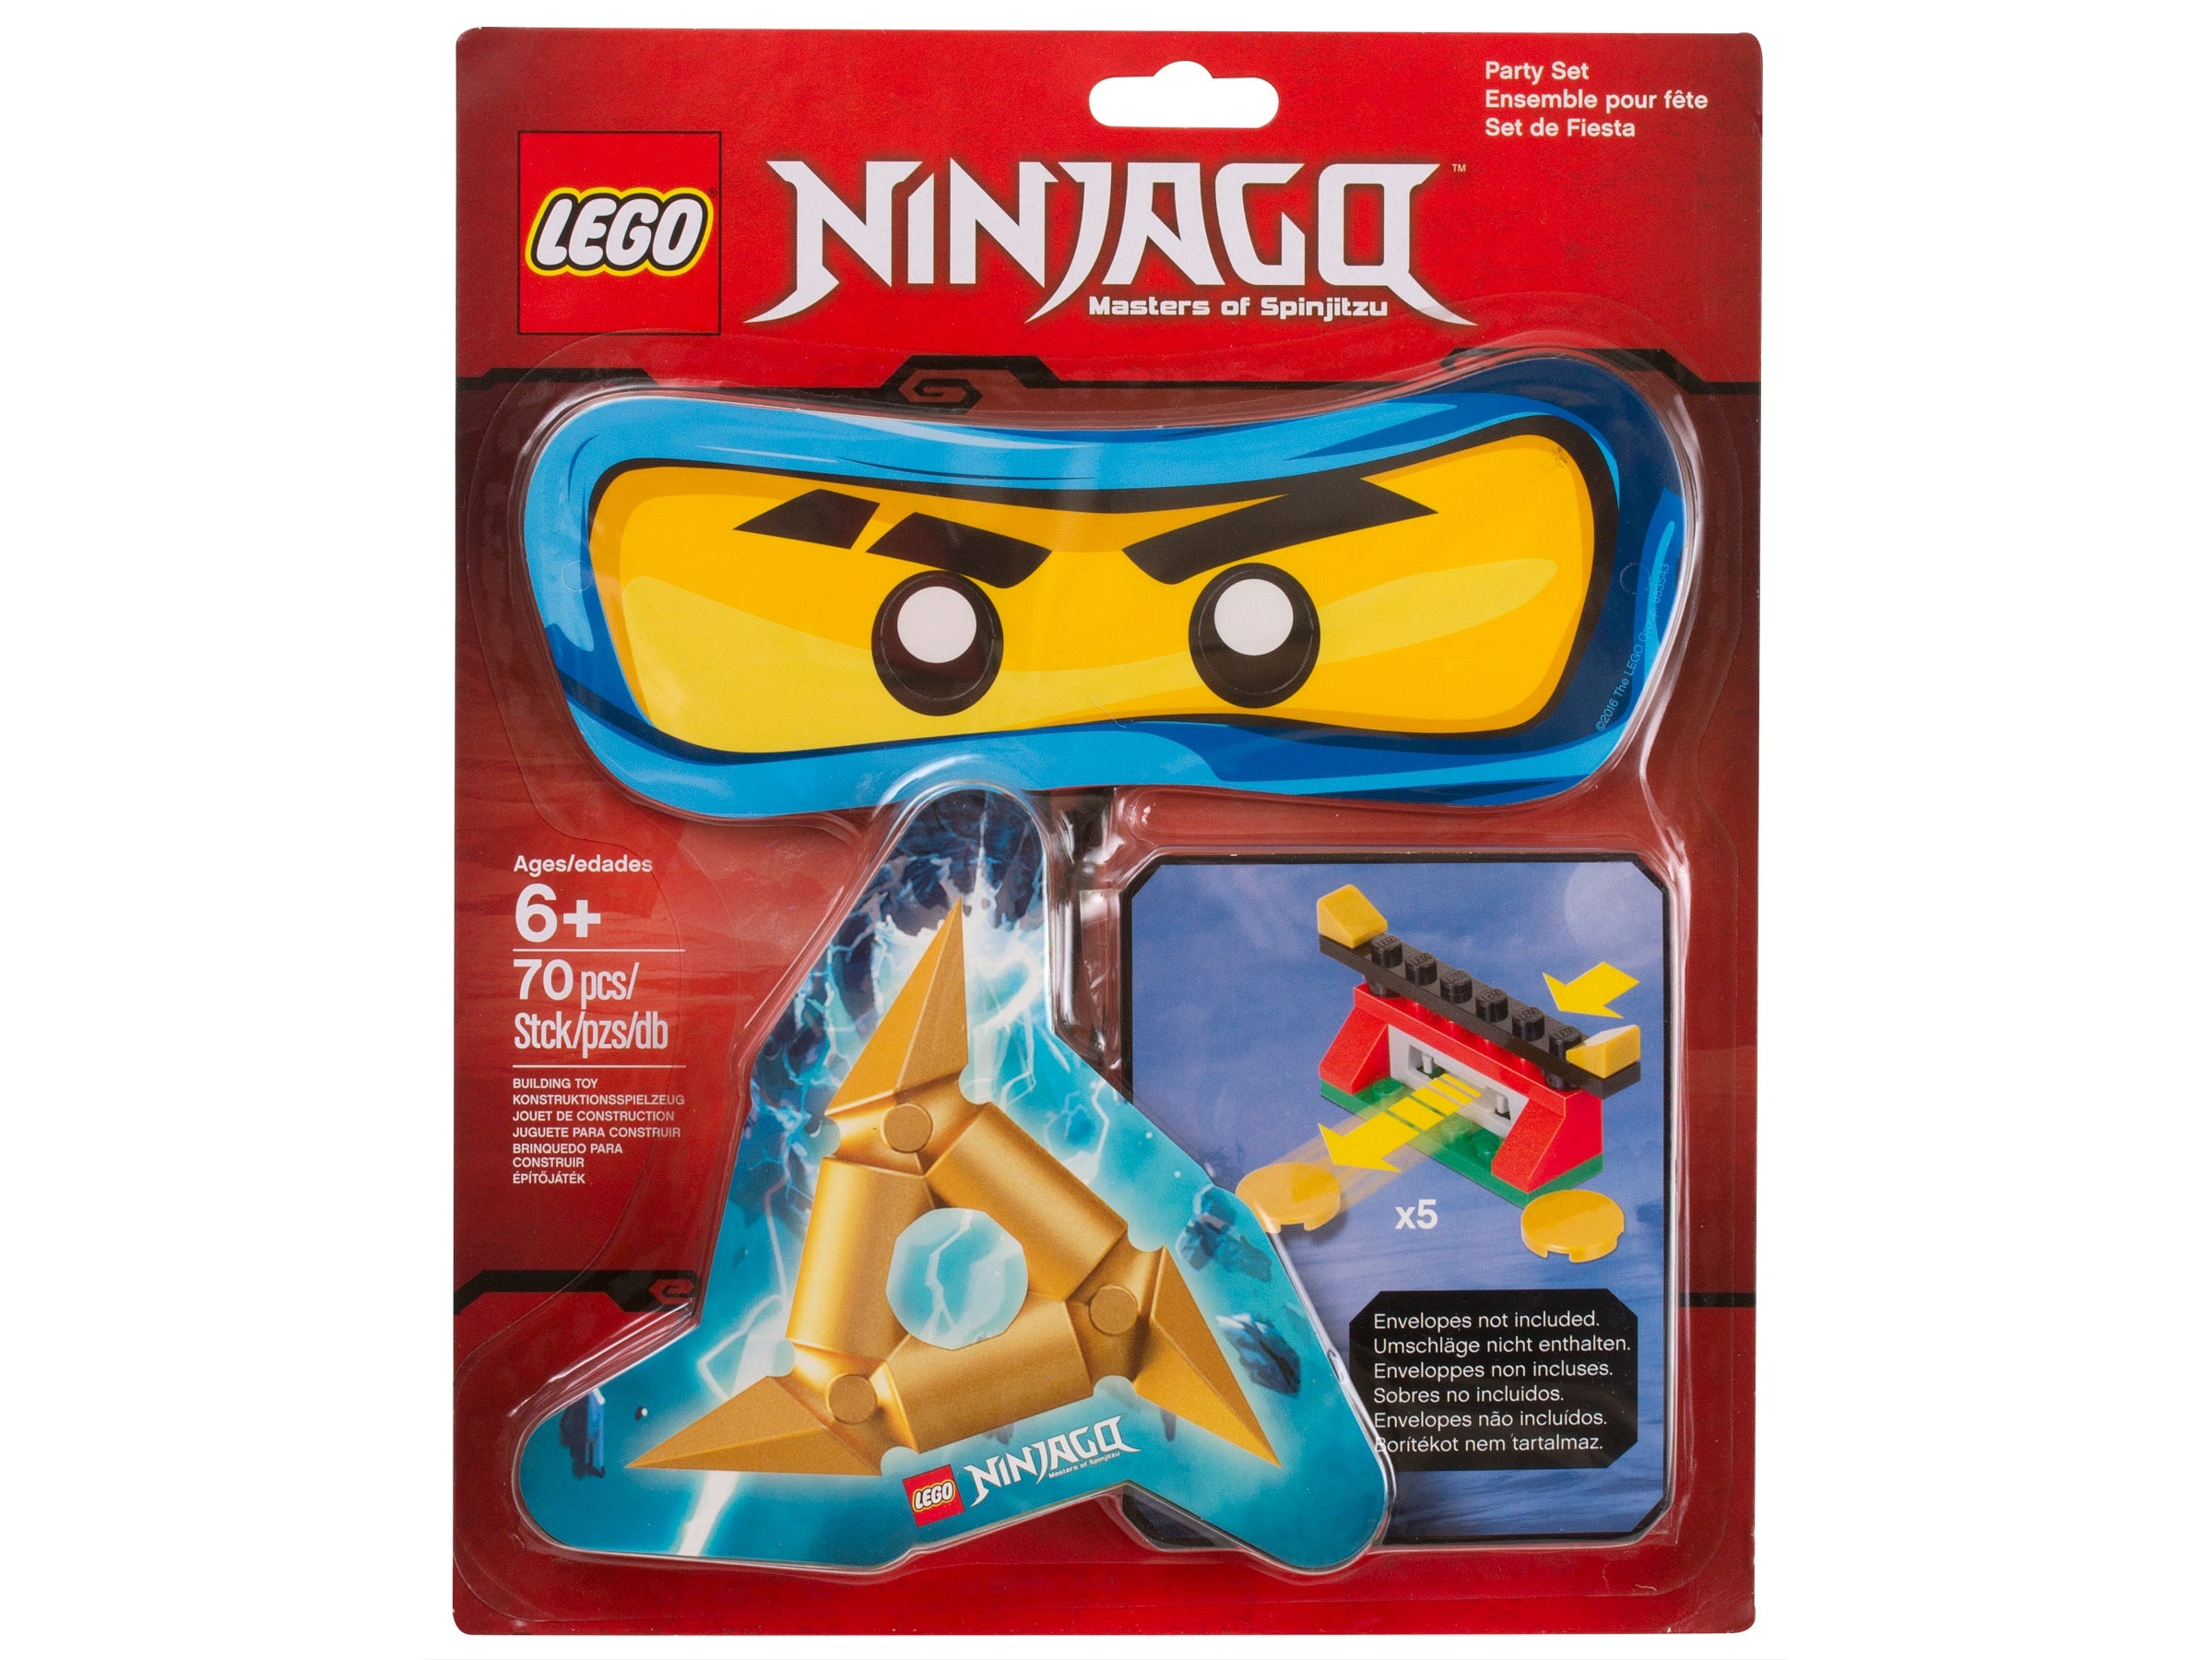 LEGO NINJAGO Geschirr Deko Kindergeburtstag Ninja Kinder Geburtstag Party Set